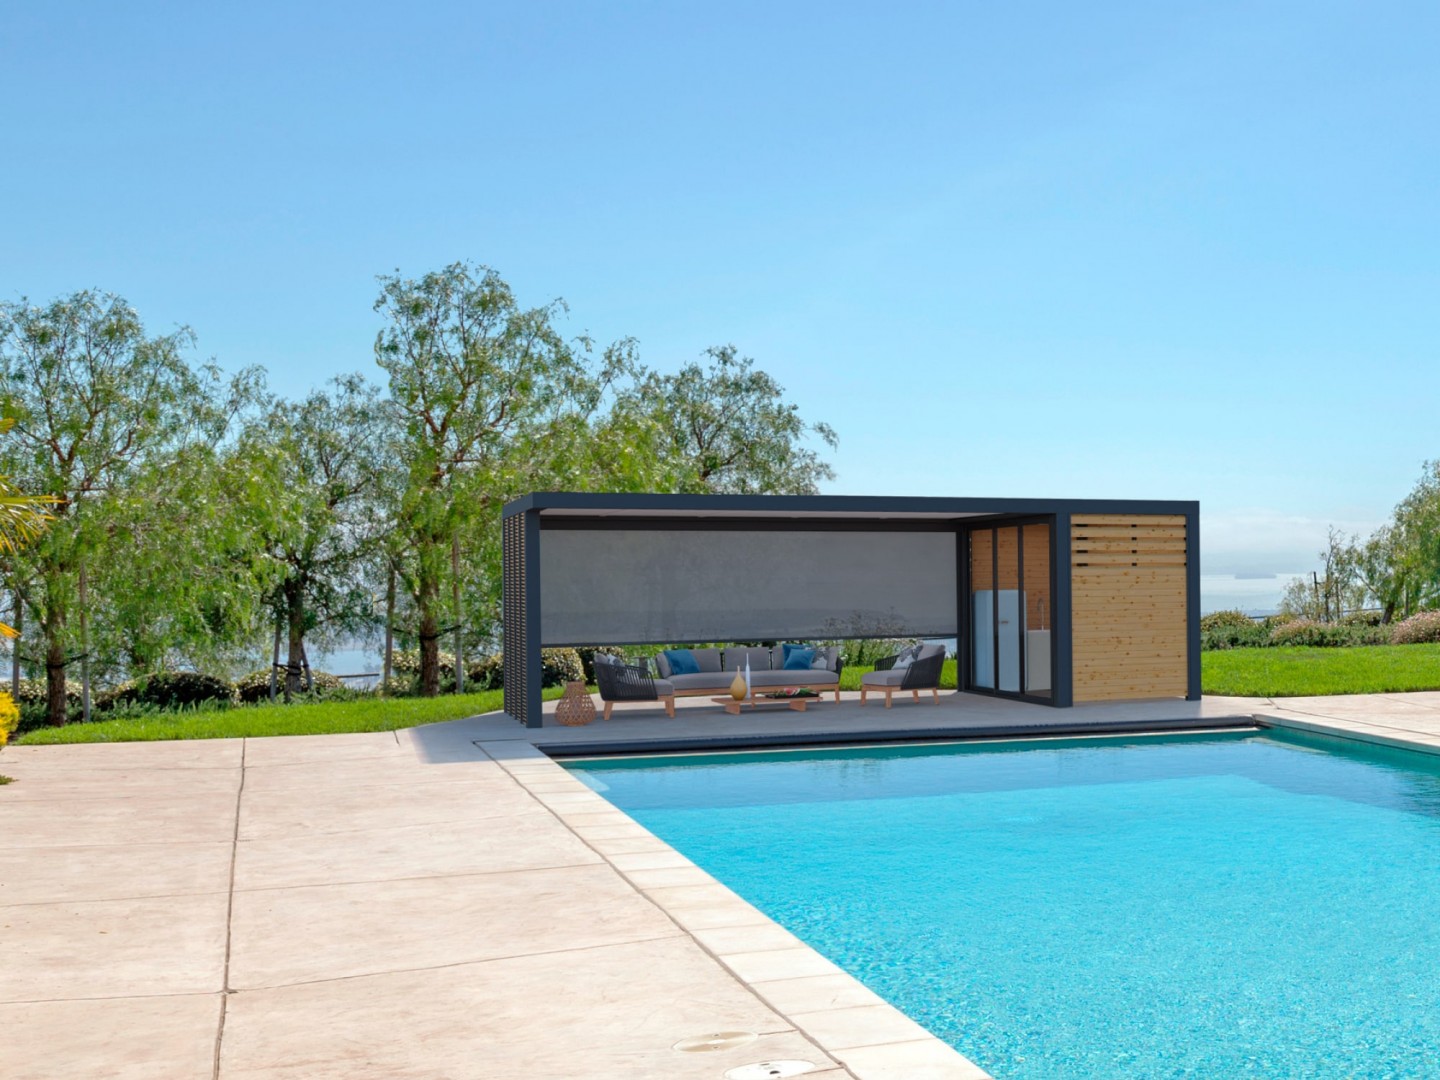 Les pool houses,
Un espace à vivre, tourné vers le jardin et la piscine
